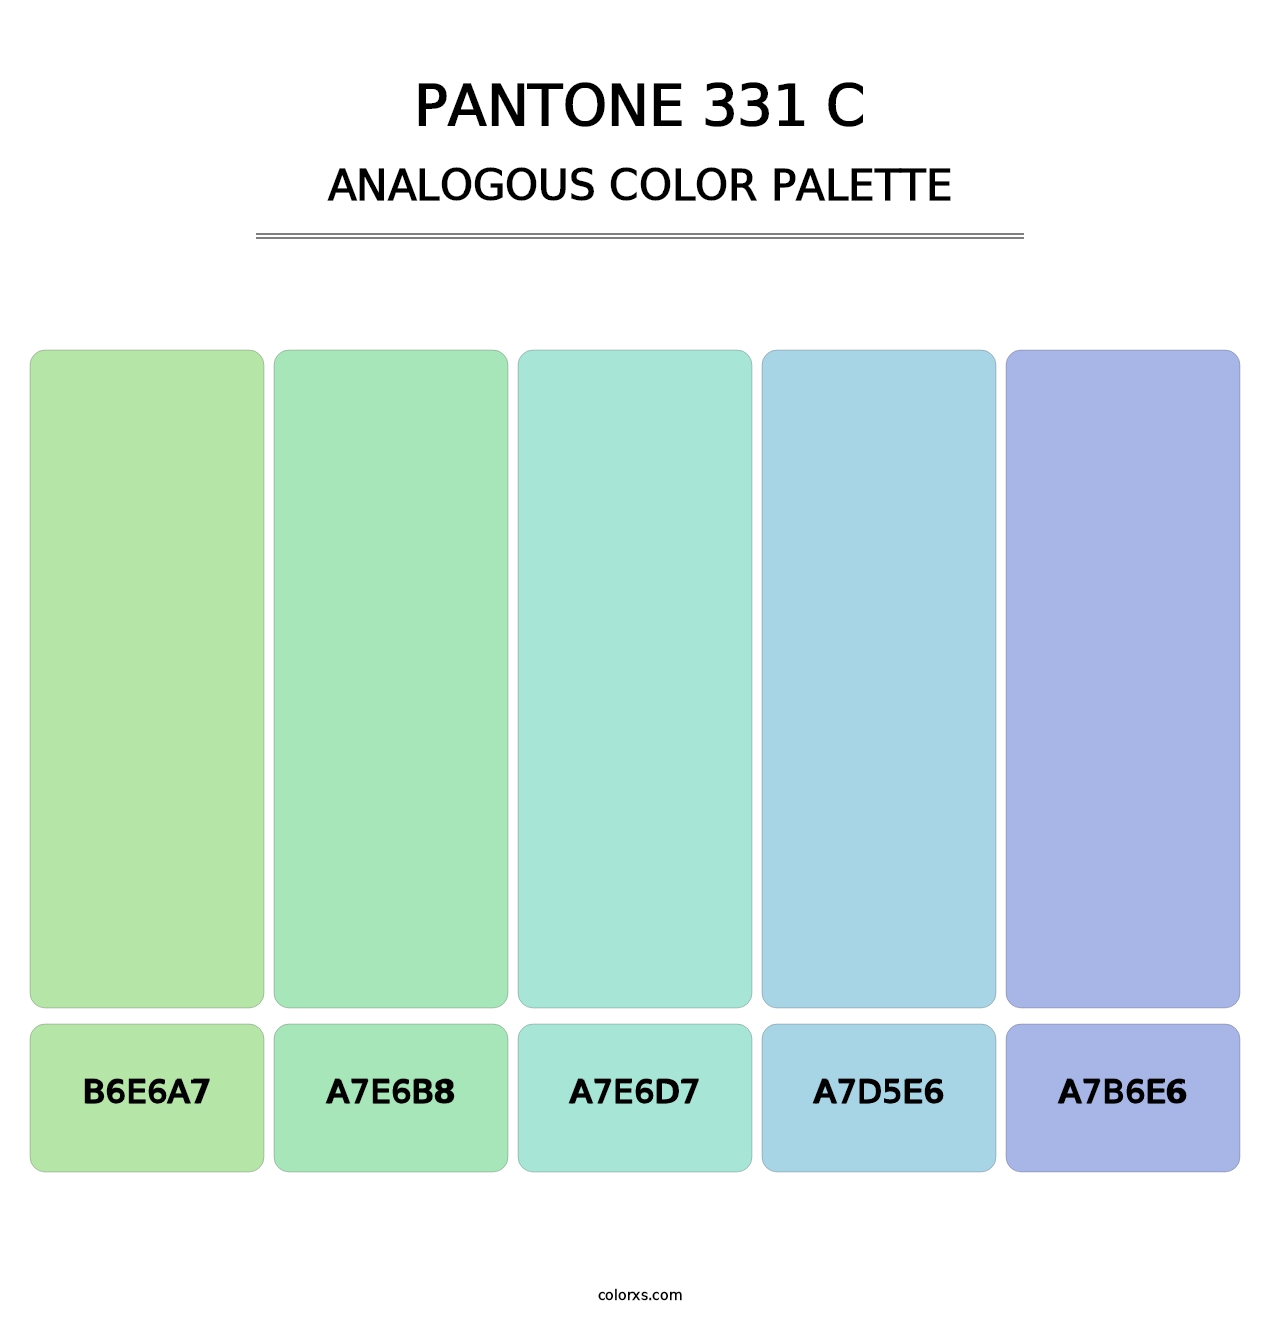 PANTONE 331 C - Analogous Color Palette